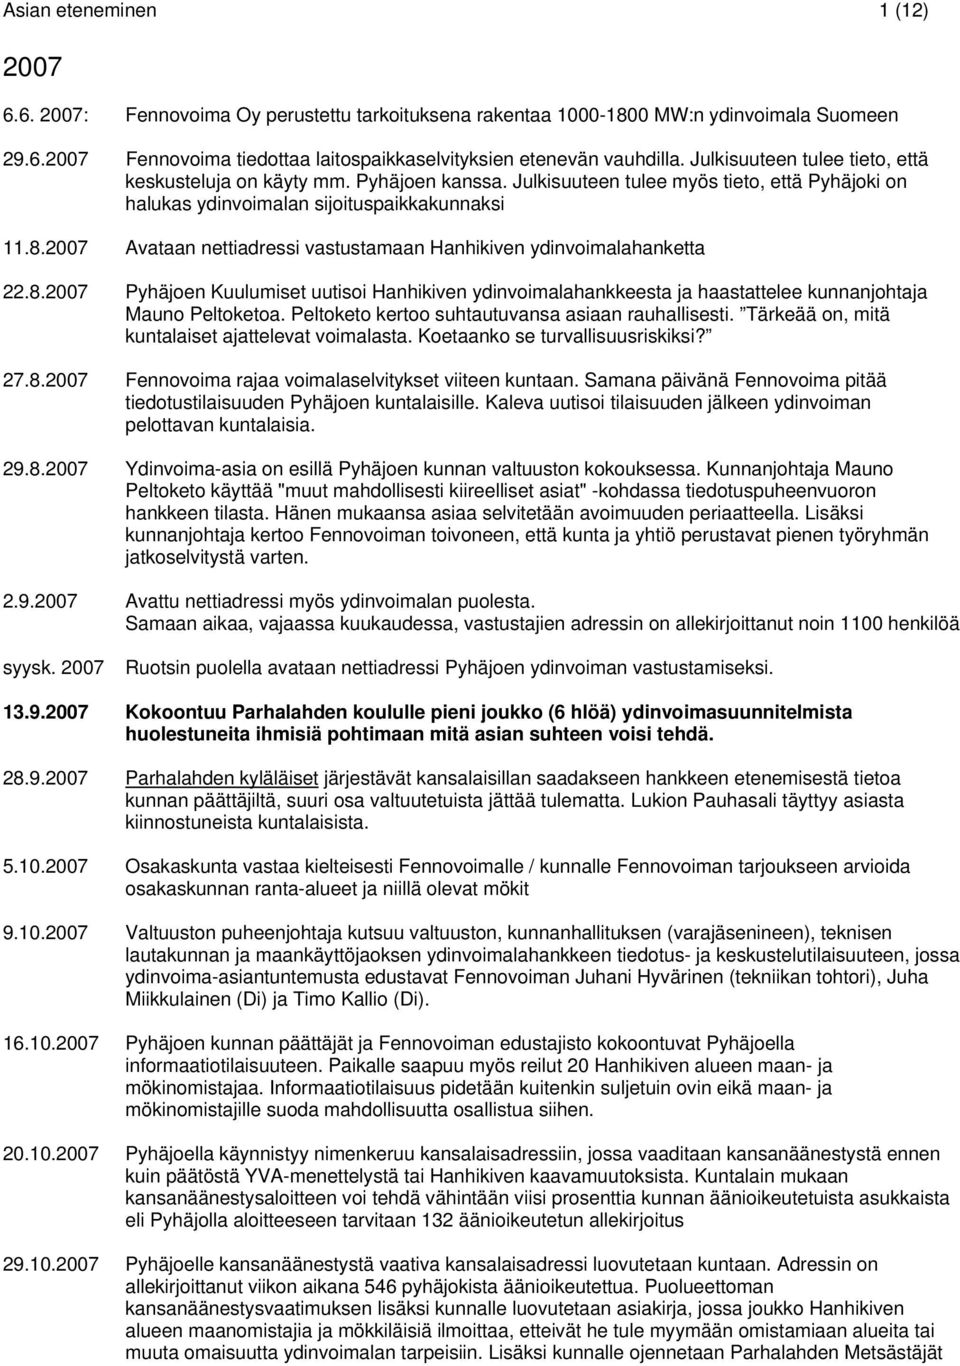 2007 Avataan nettiadressi vastustamaan Hanhikiven ydinvoimalahanketta 22.8.2007 Pyhäjoen Kuulumiset uutisoi Hanhikiven ydinvoimalahankkeesta ja haastattelee kunnanjohtaja Mauno Peltoketoa.